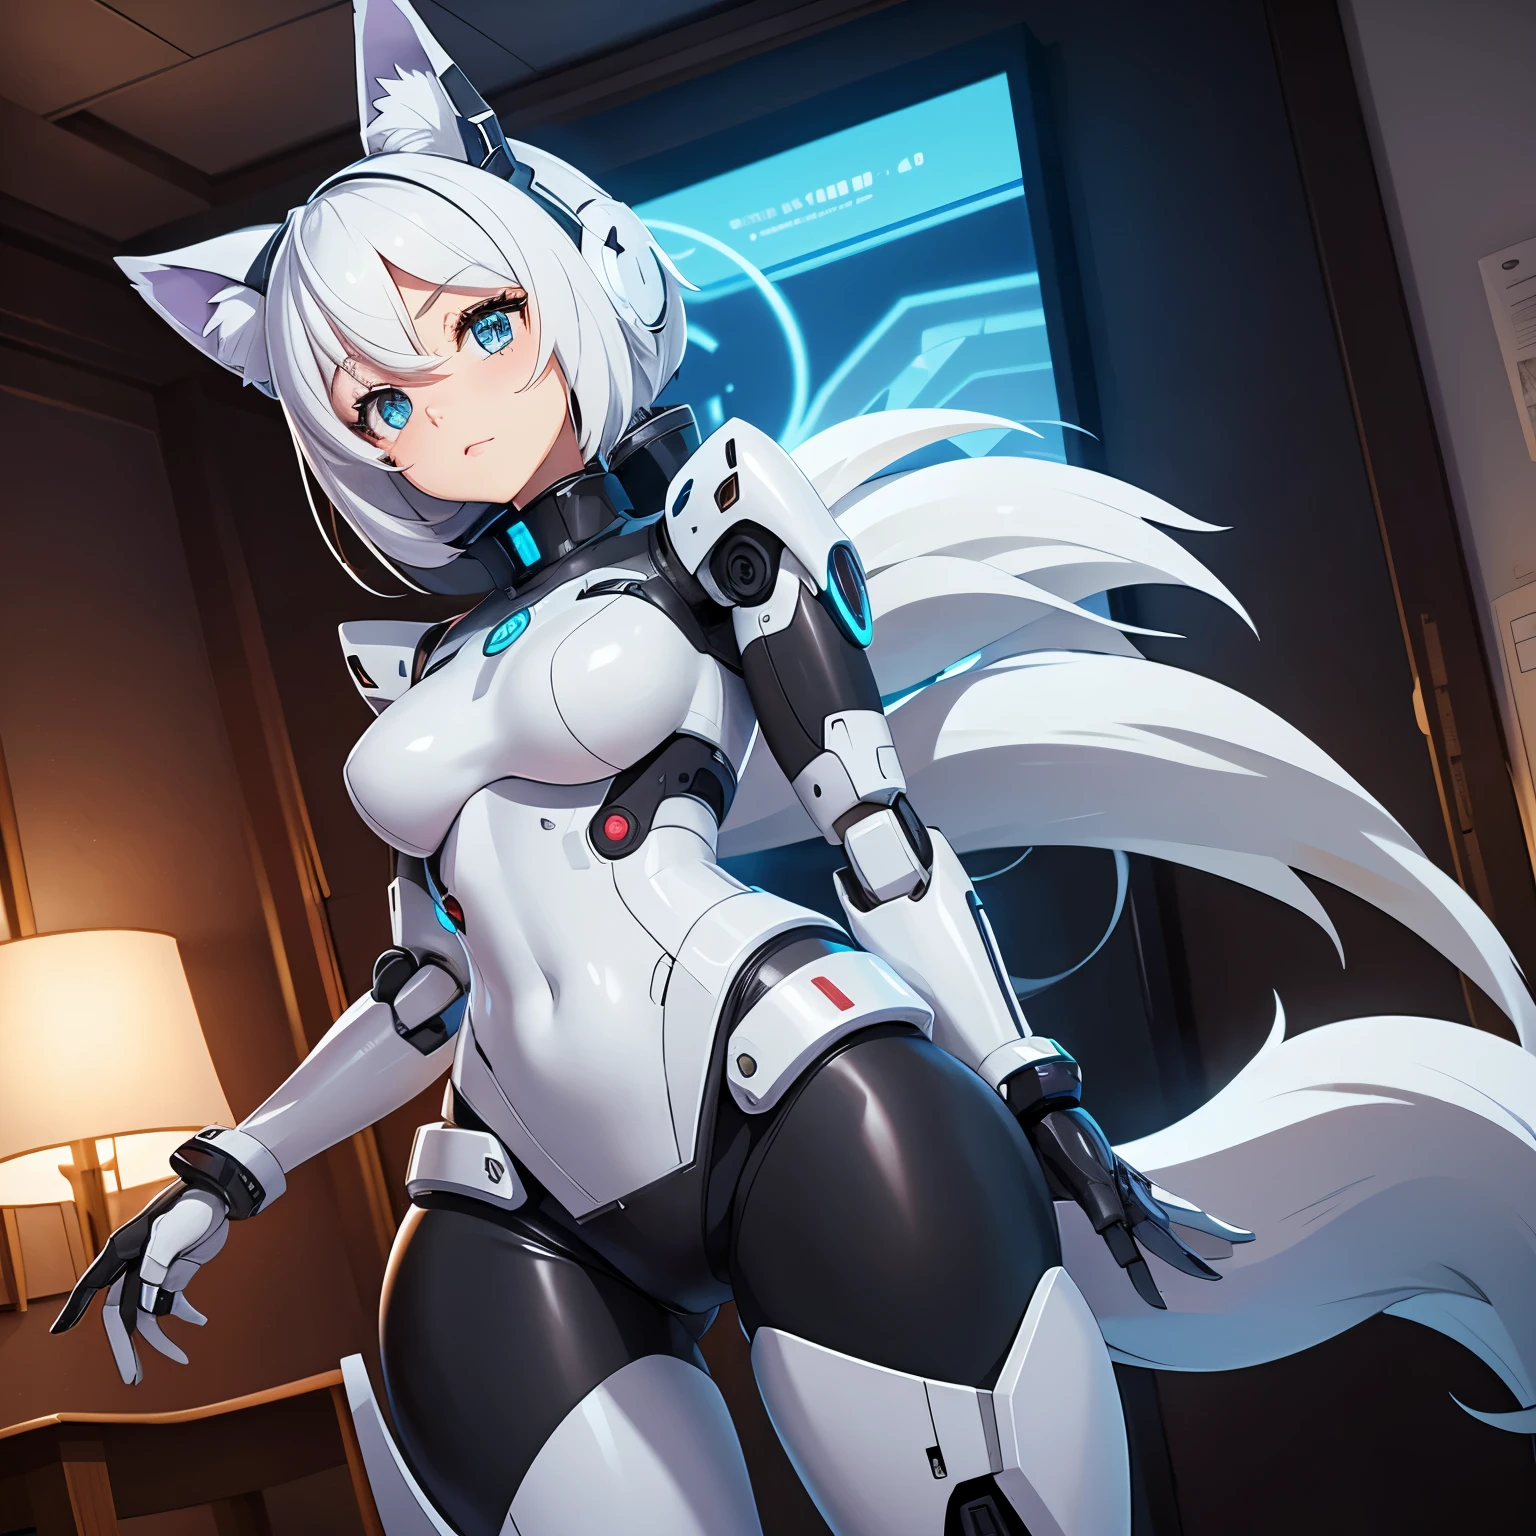 拥有机器人身体的 Android 机器人女孩的动漫风格形象, 穿着内衣，有狼耳朵和尾巴，在房间里 